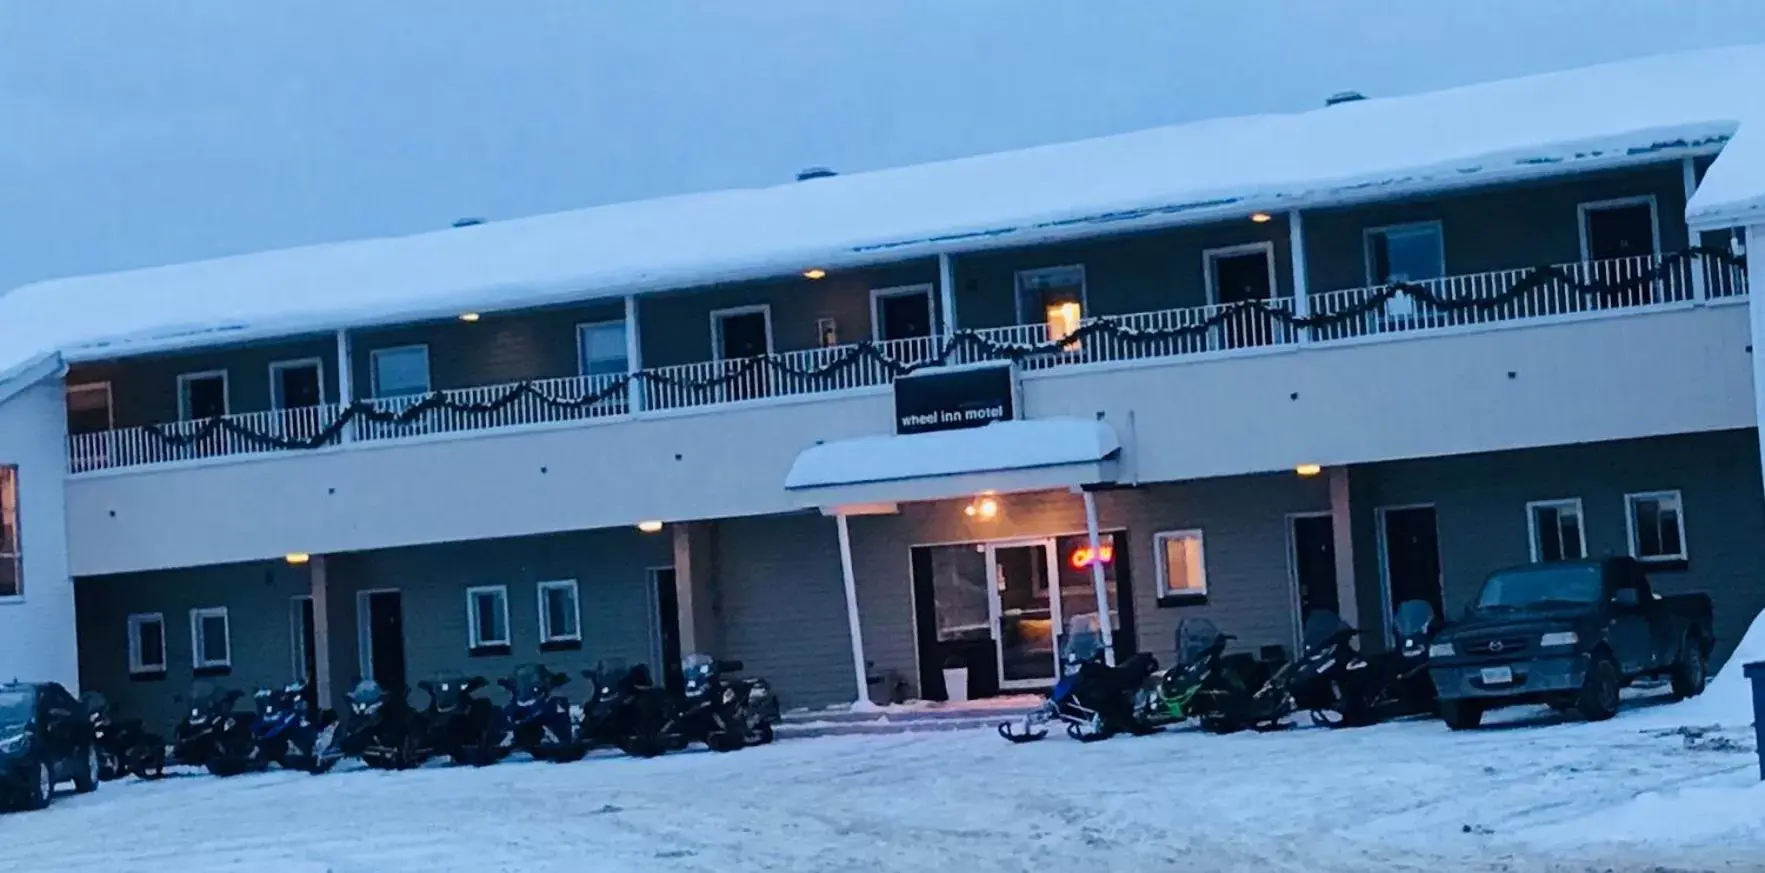 Winter in Wheel Inn Motel